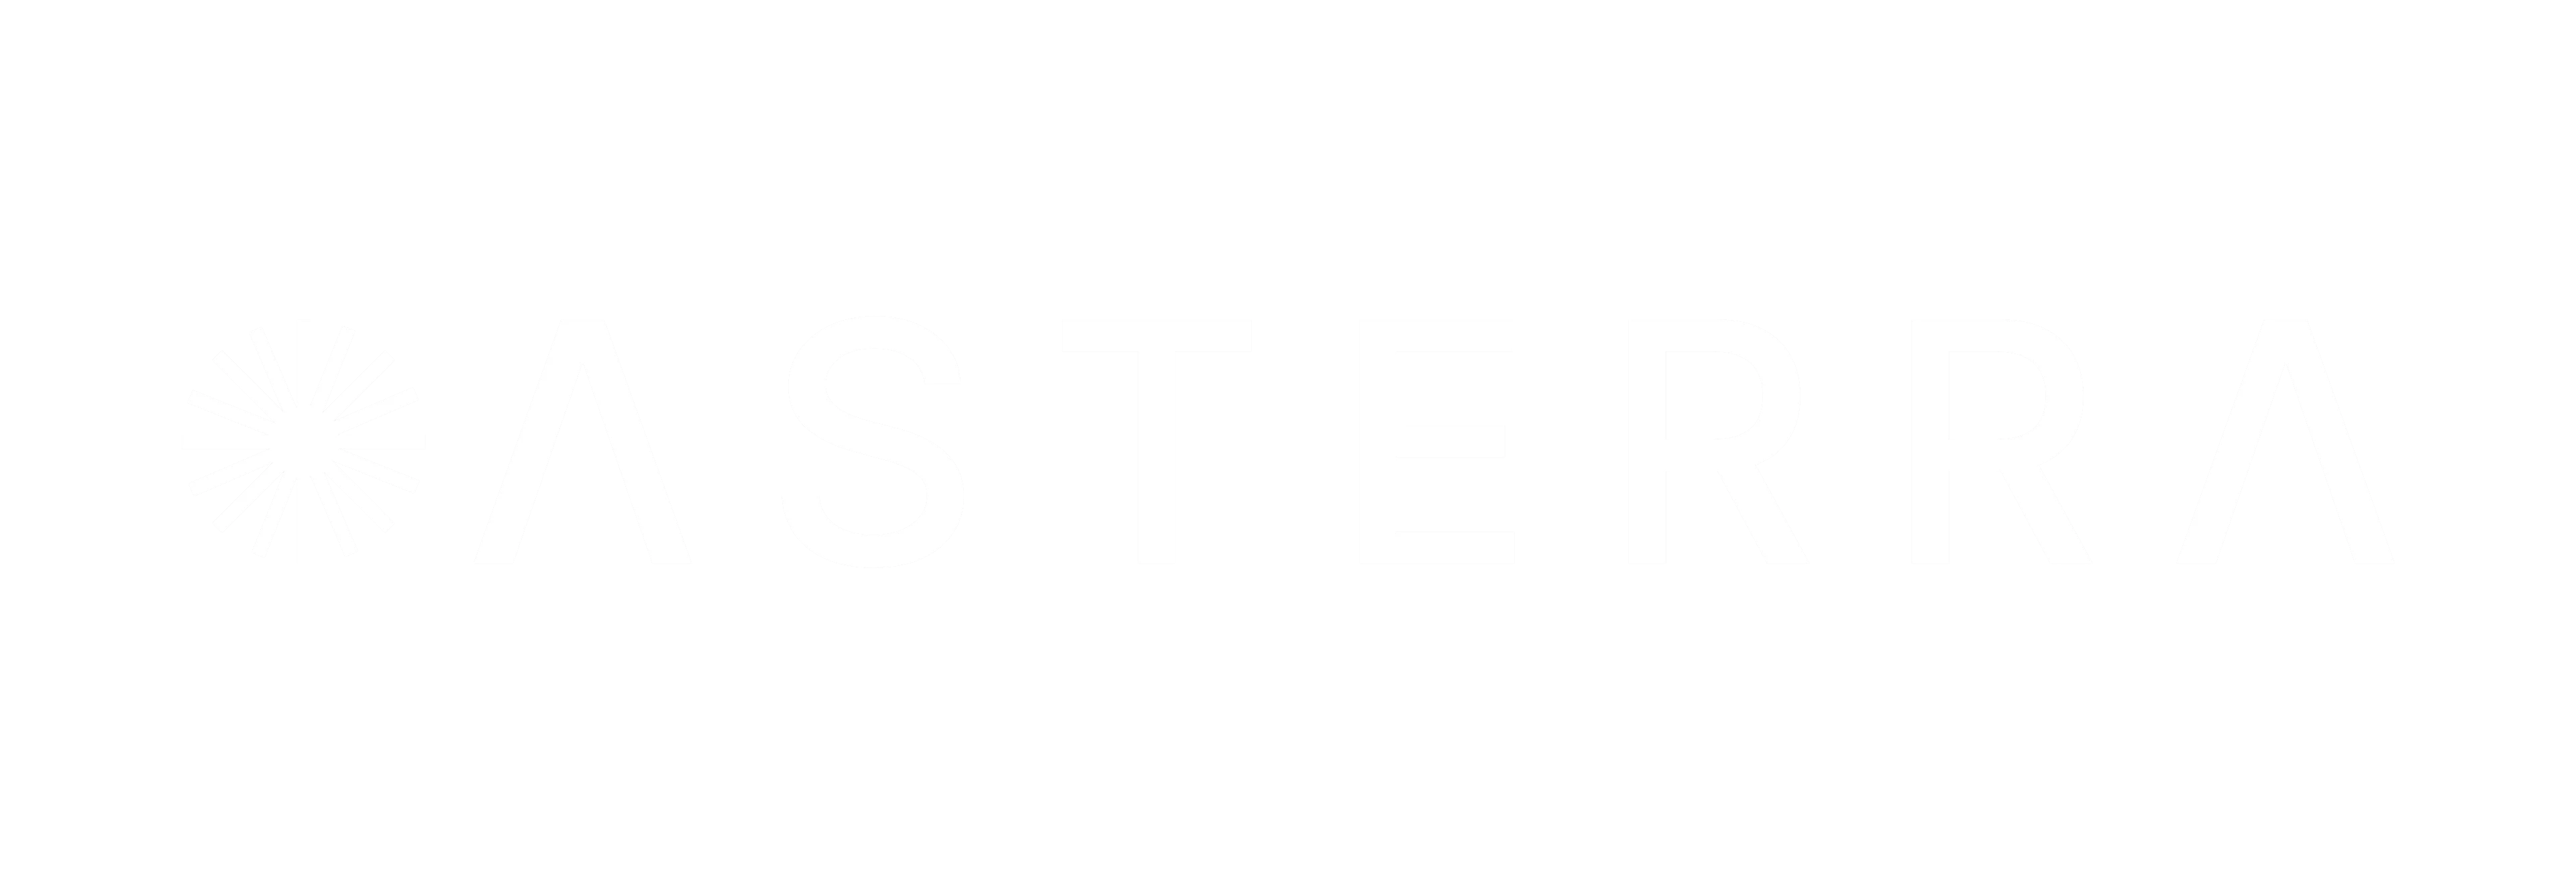 ASTERRA logo white padded